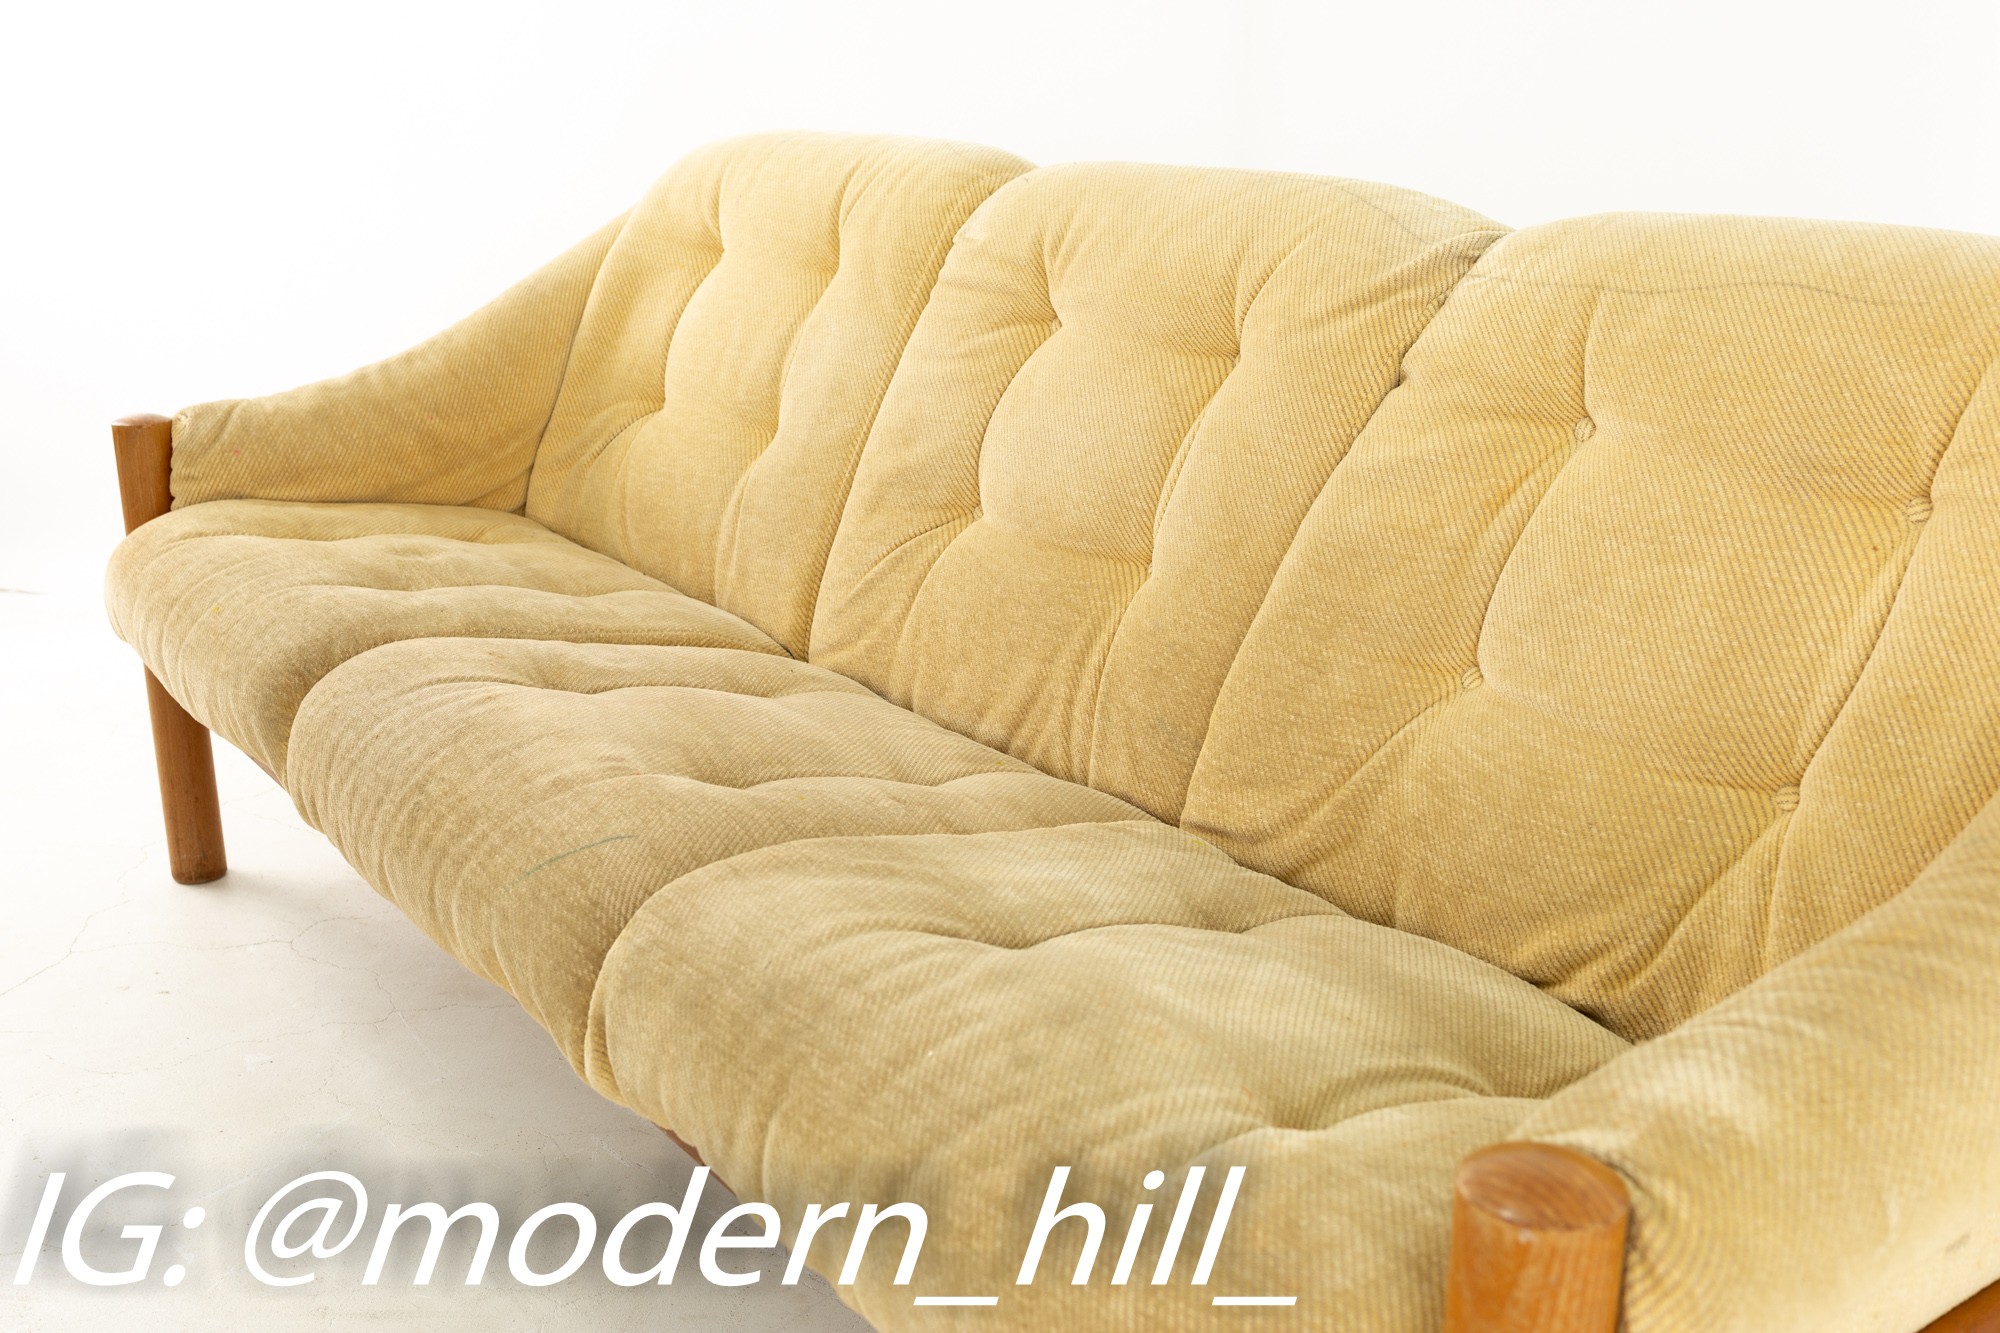 Domino Mobler Mid Century Teak Upholstered Sofa